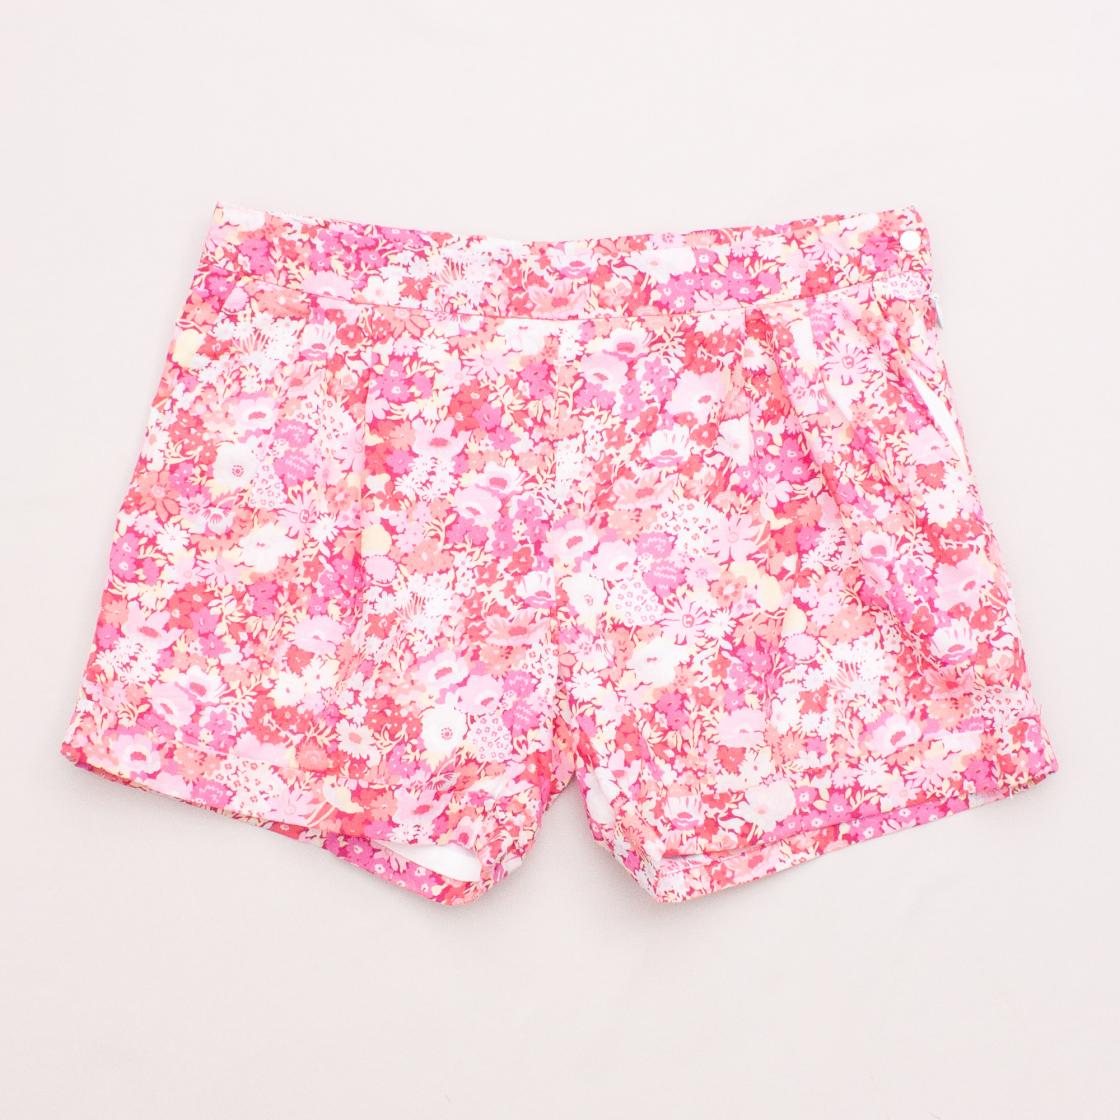 Jacadi Floral Shorts "Brand New"